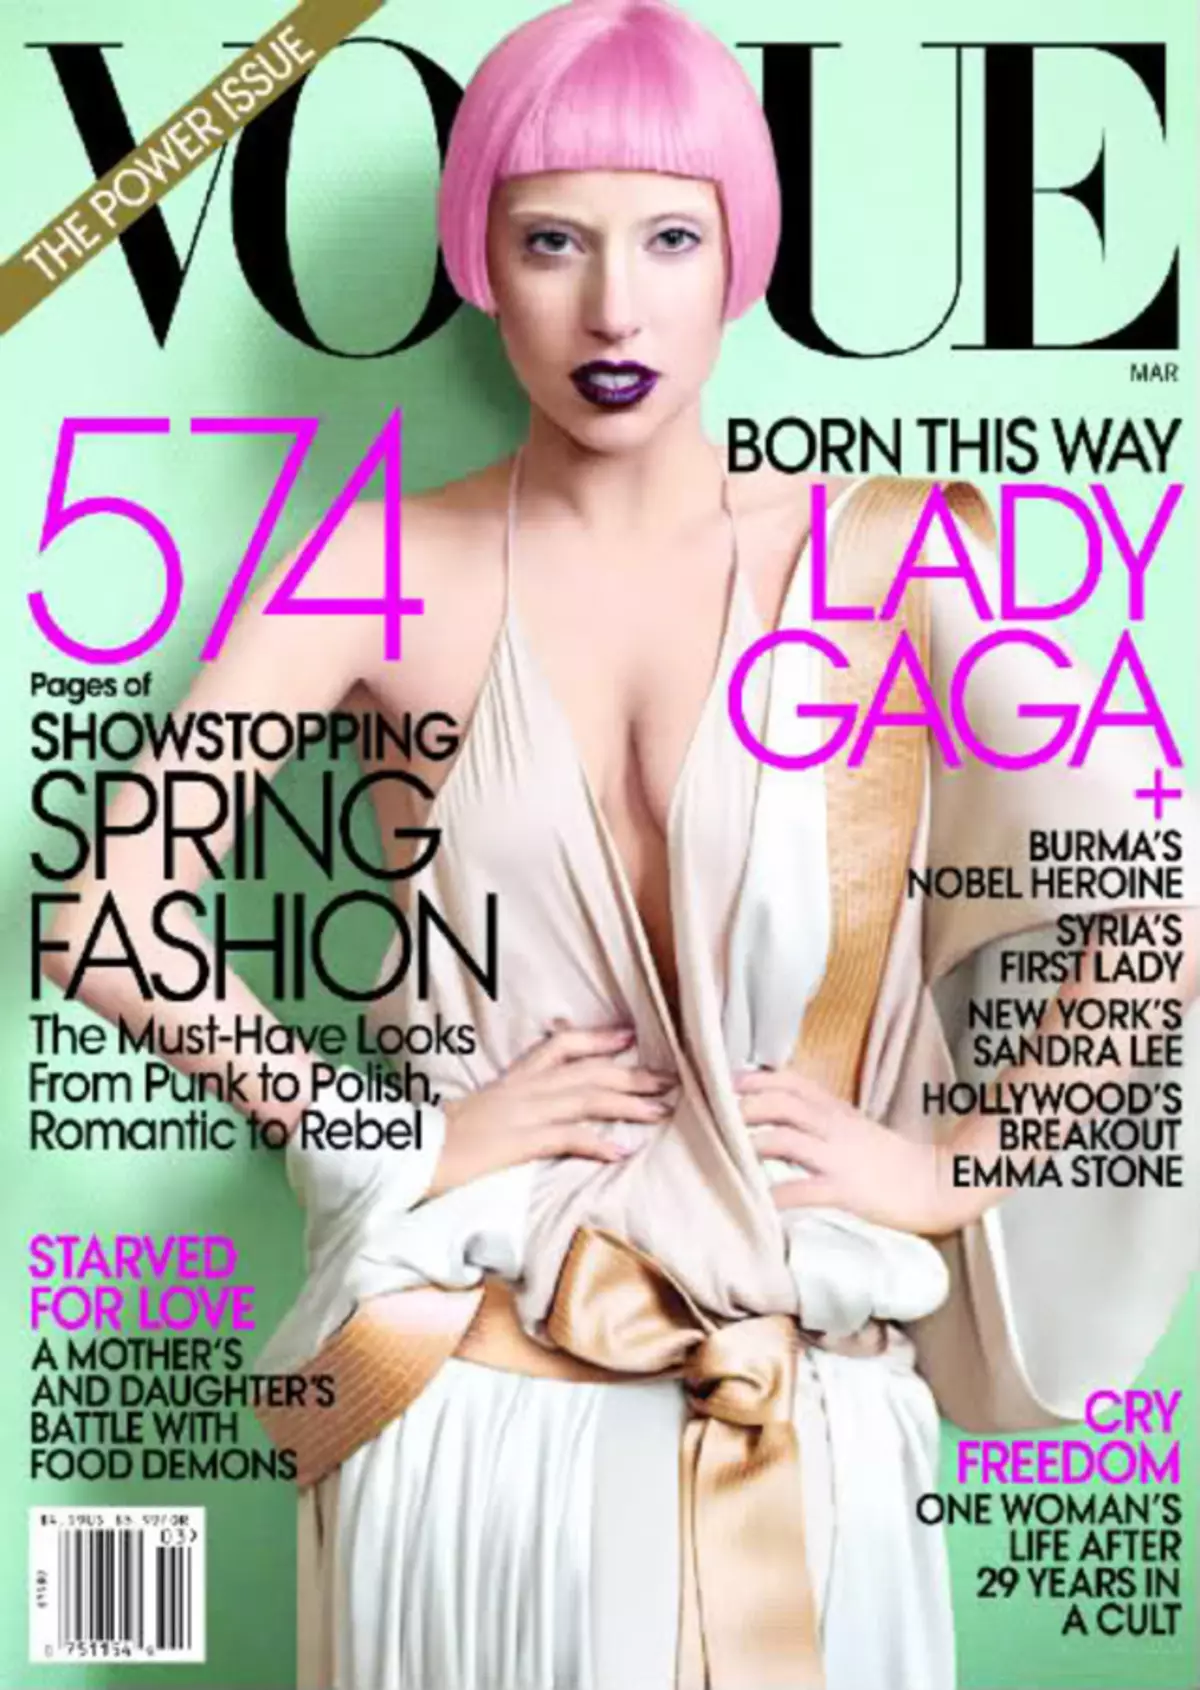 Συνέντευξη Lady Gaga στο περιοδικό Vogue